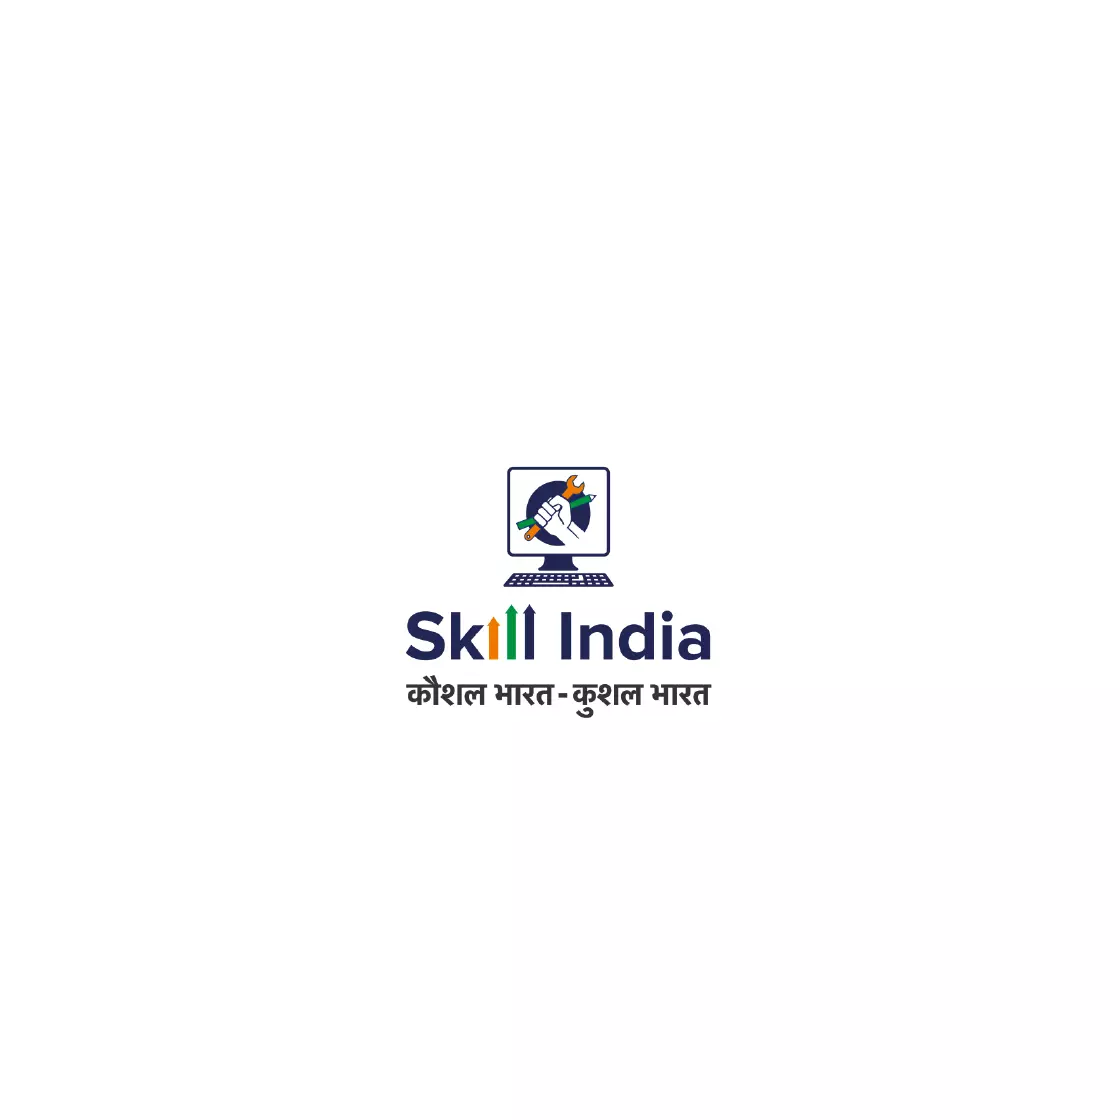 SkillIndia